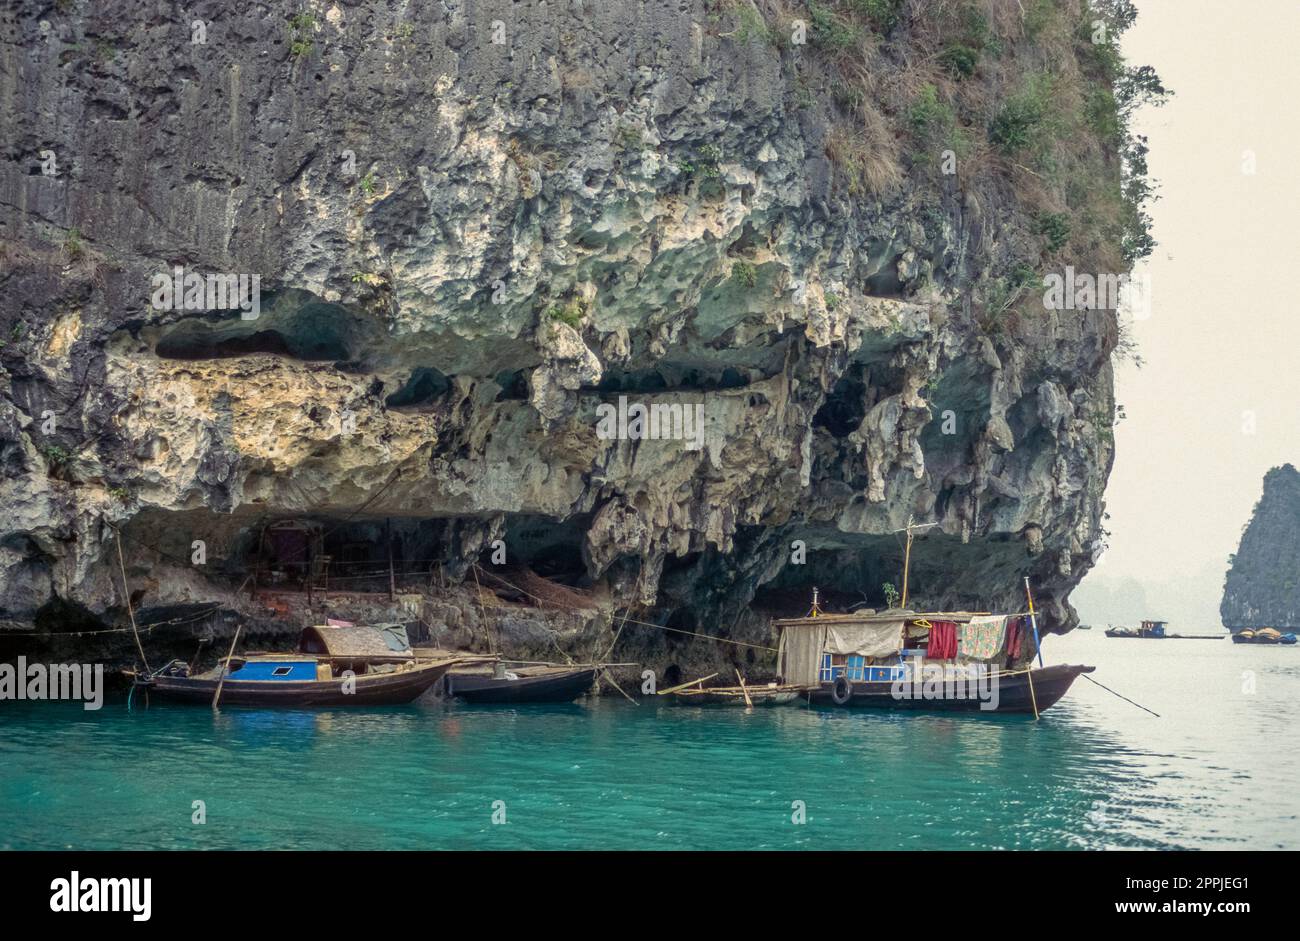 Diapositiva scansionata di fotografia storica a colori della regione costiera del Vietnam nella Baia di ha Long nel Mare della Cina Foto Stock